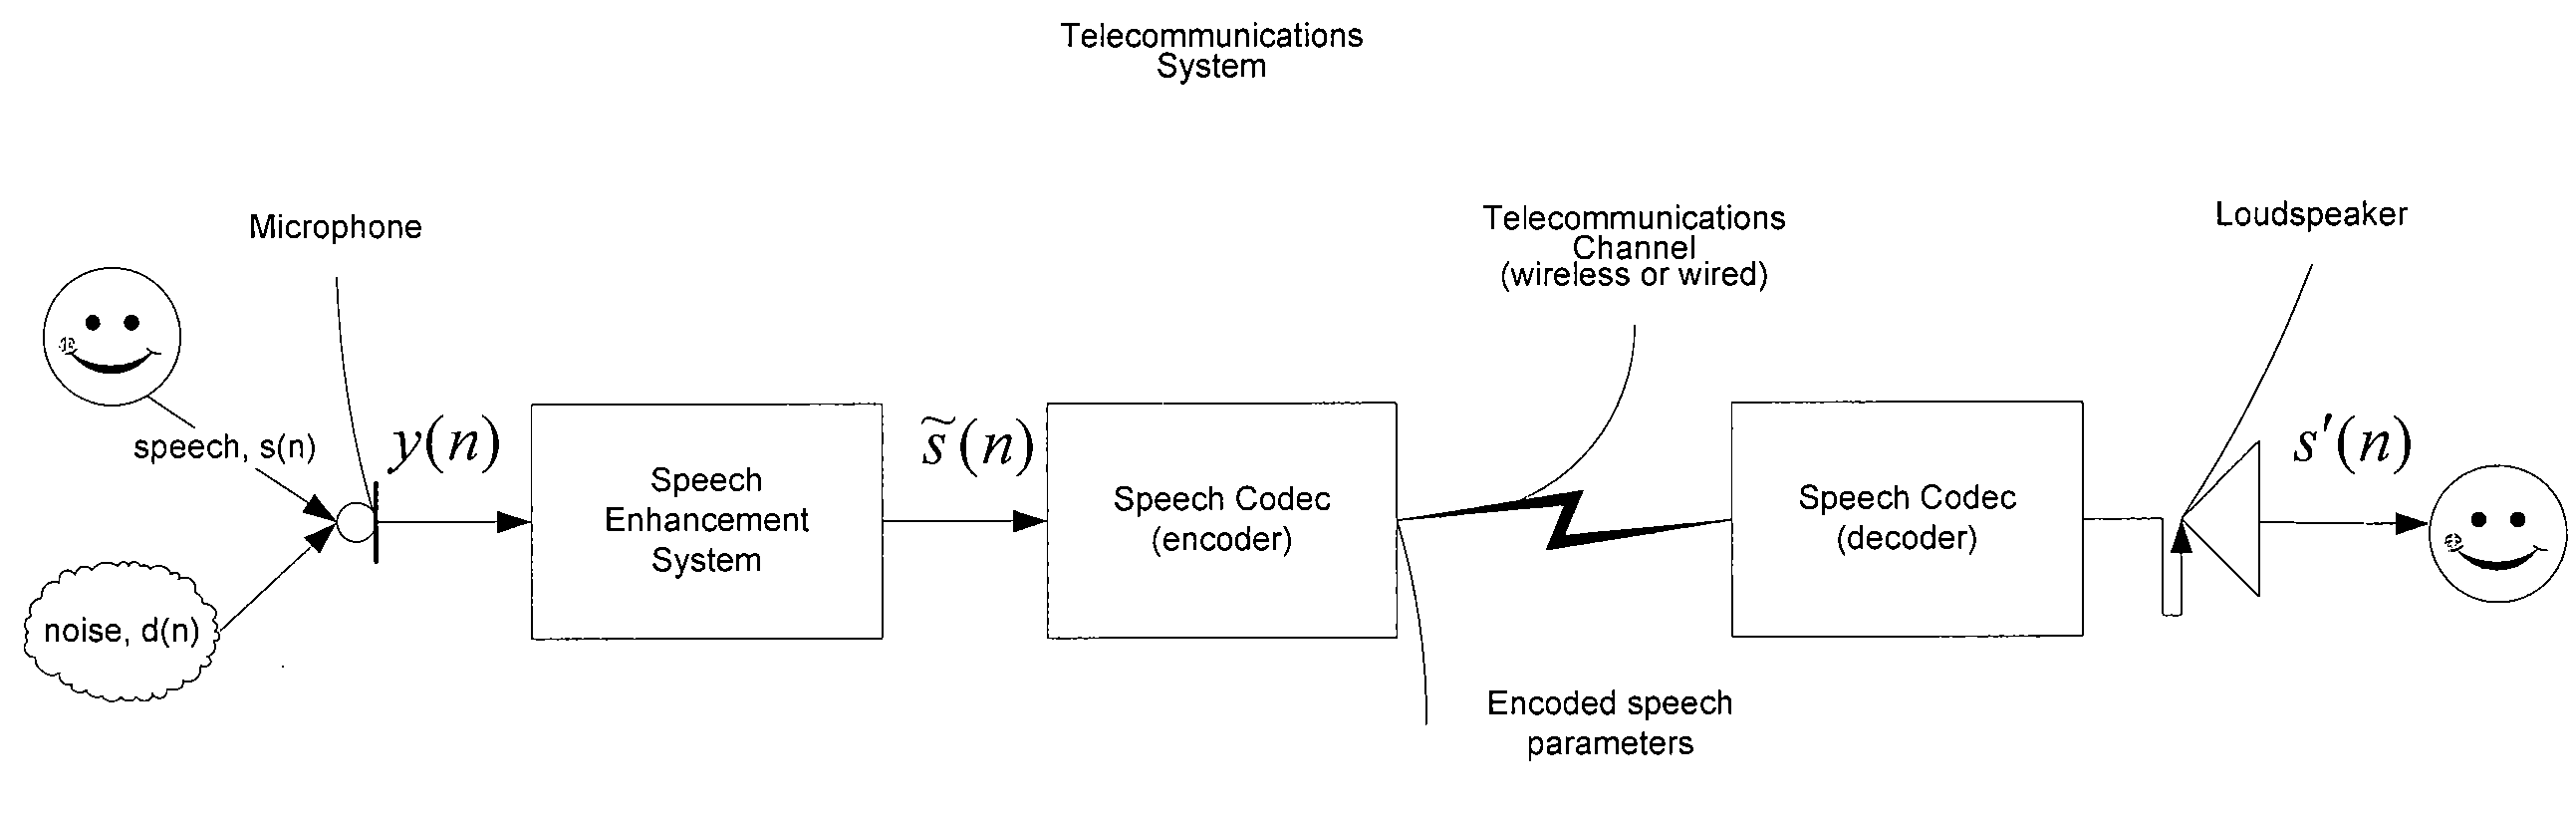 Speech enhancement system